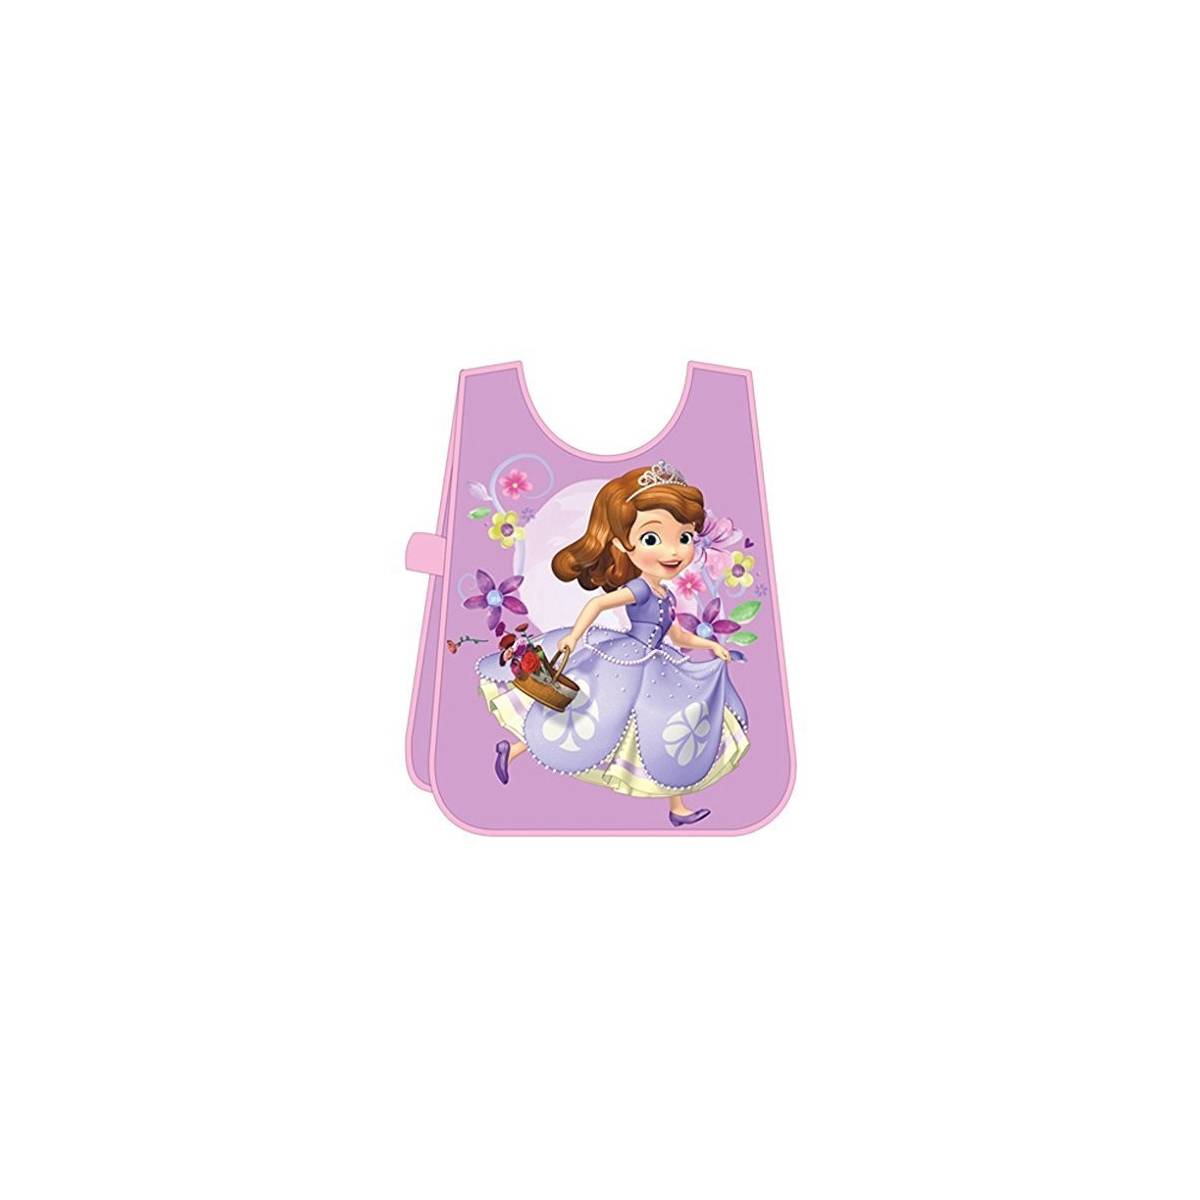 Princesse Sofia - Tablier de Peinture Enfant - Violet - Disney